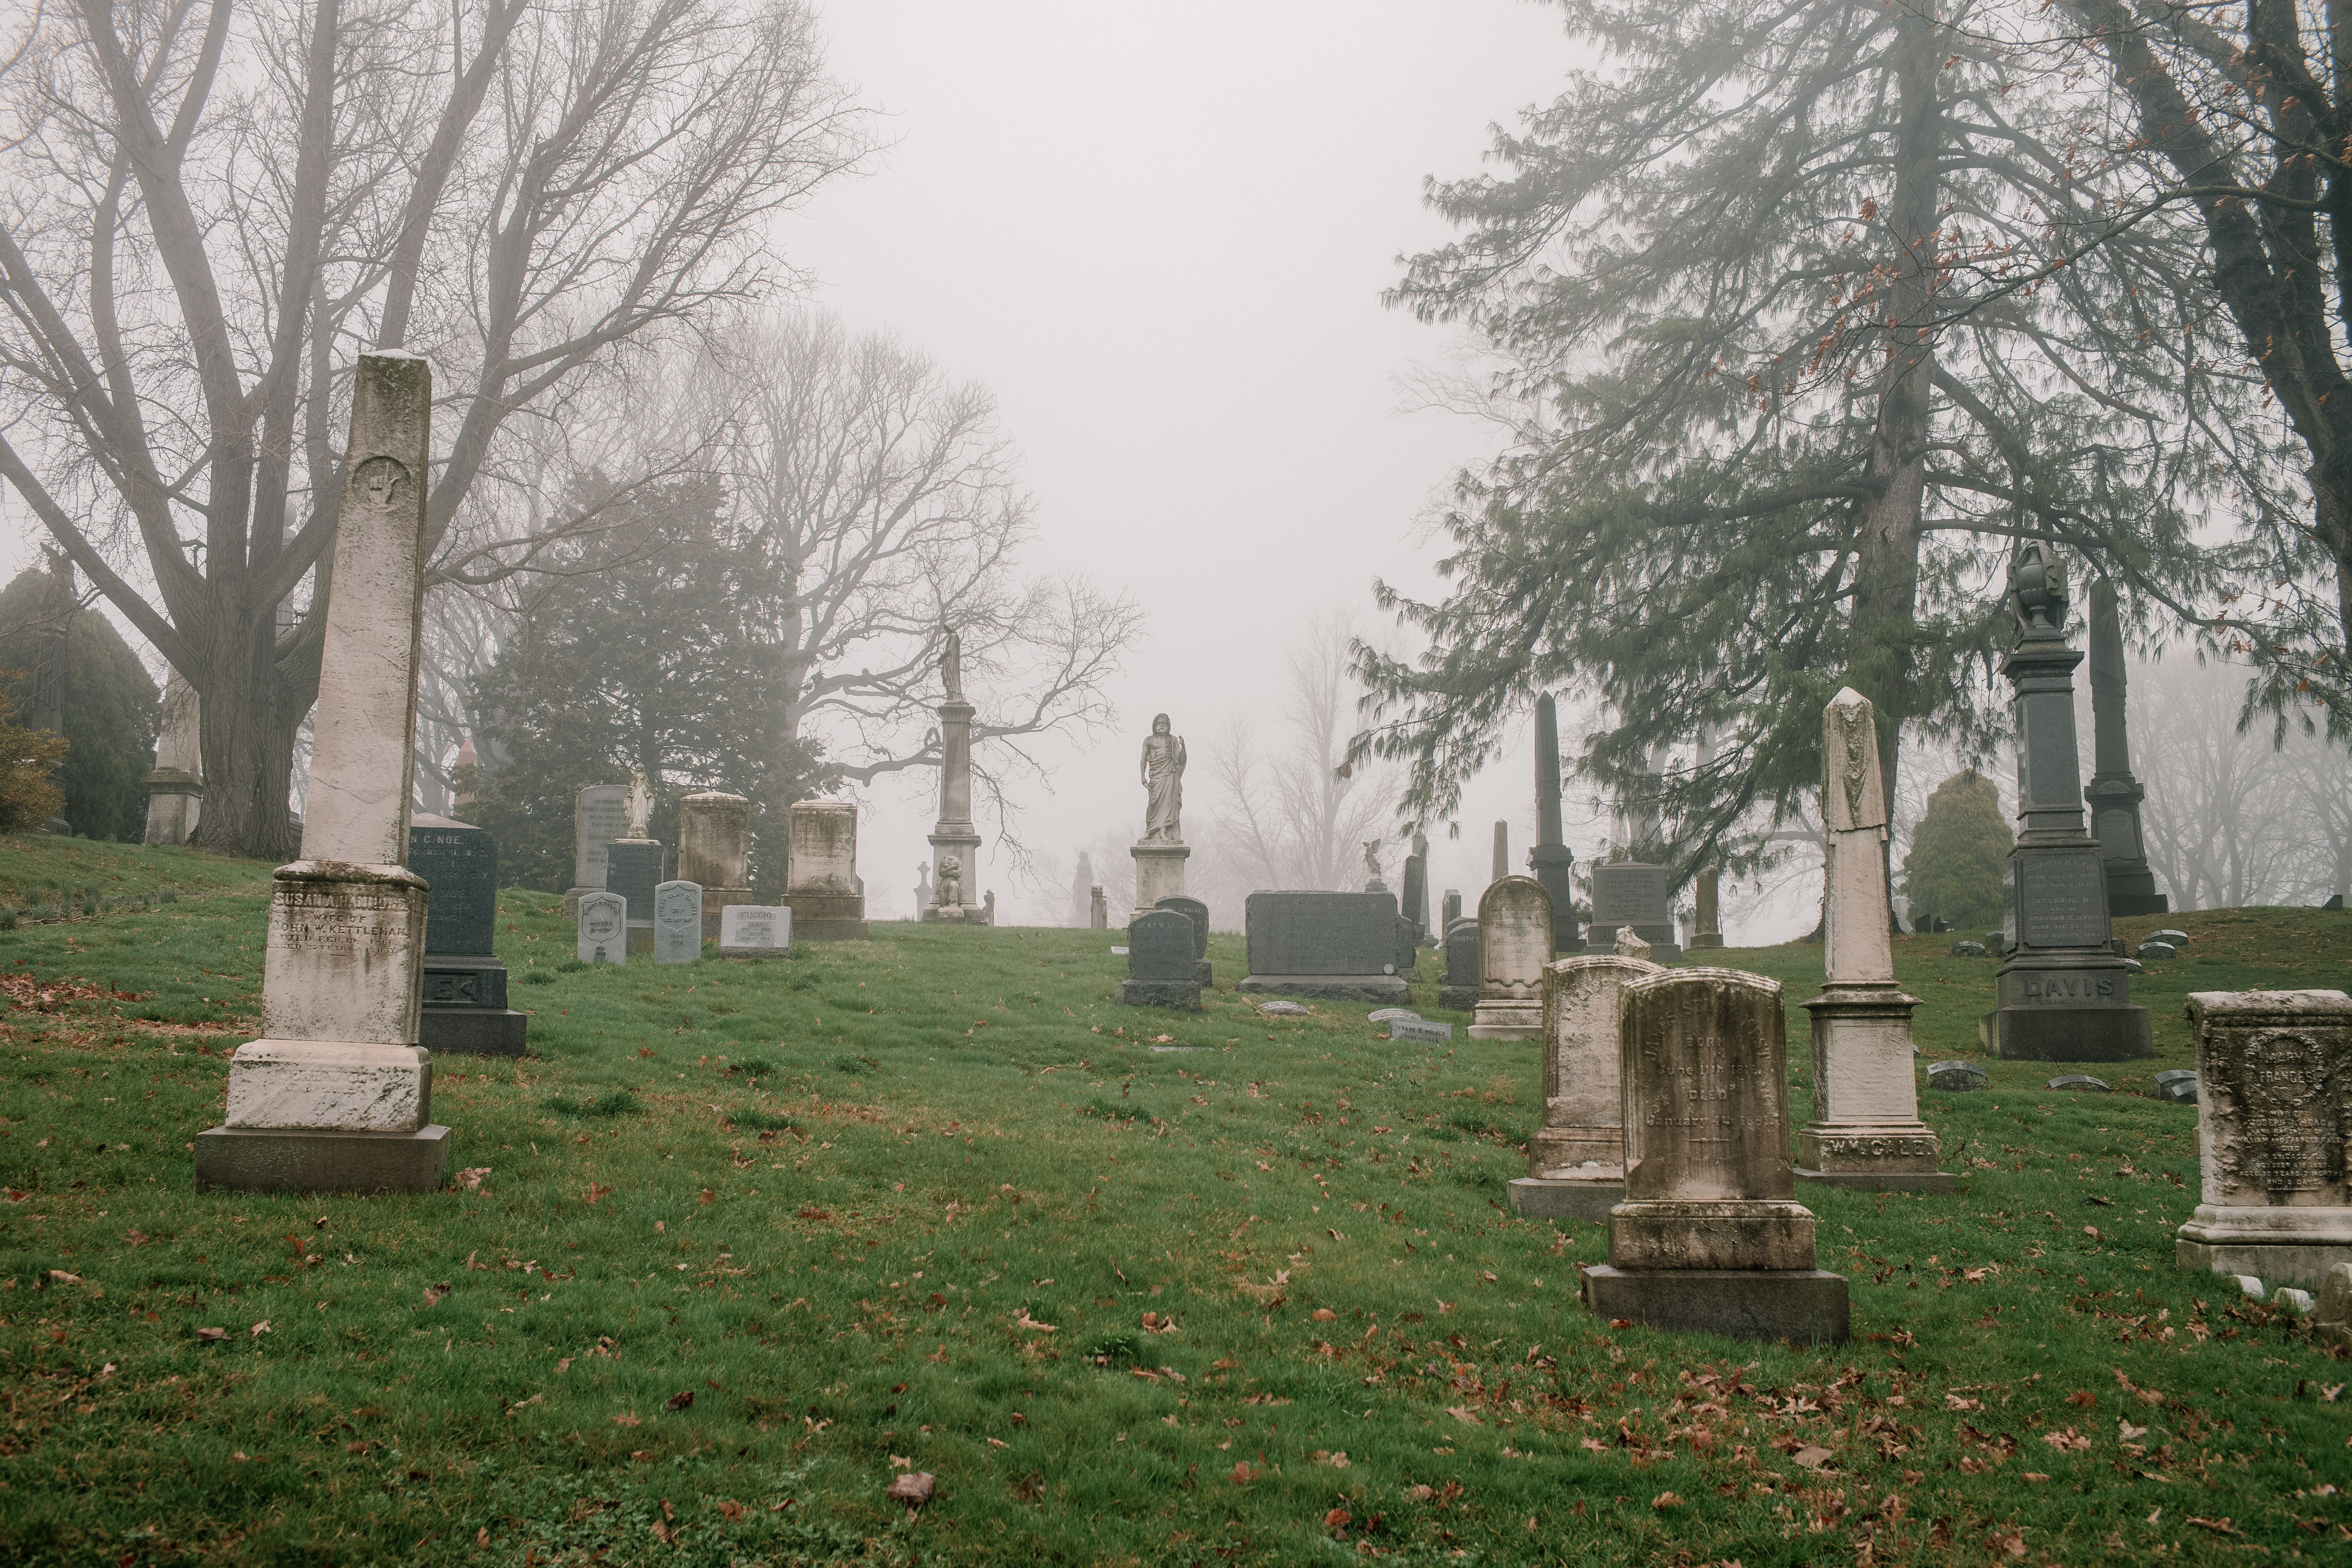 Tombstones in a misty cemetery in Brooklyn.